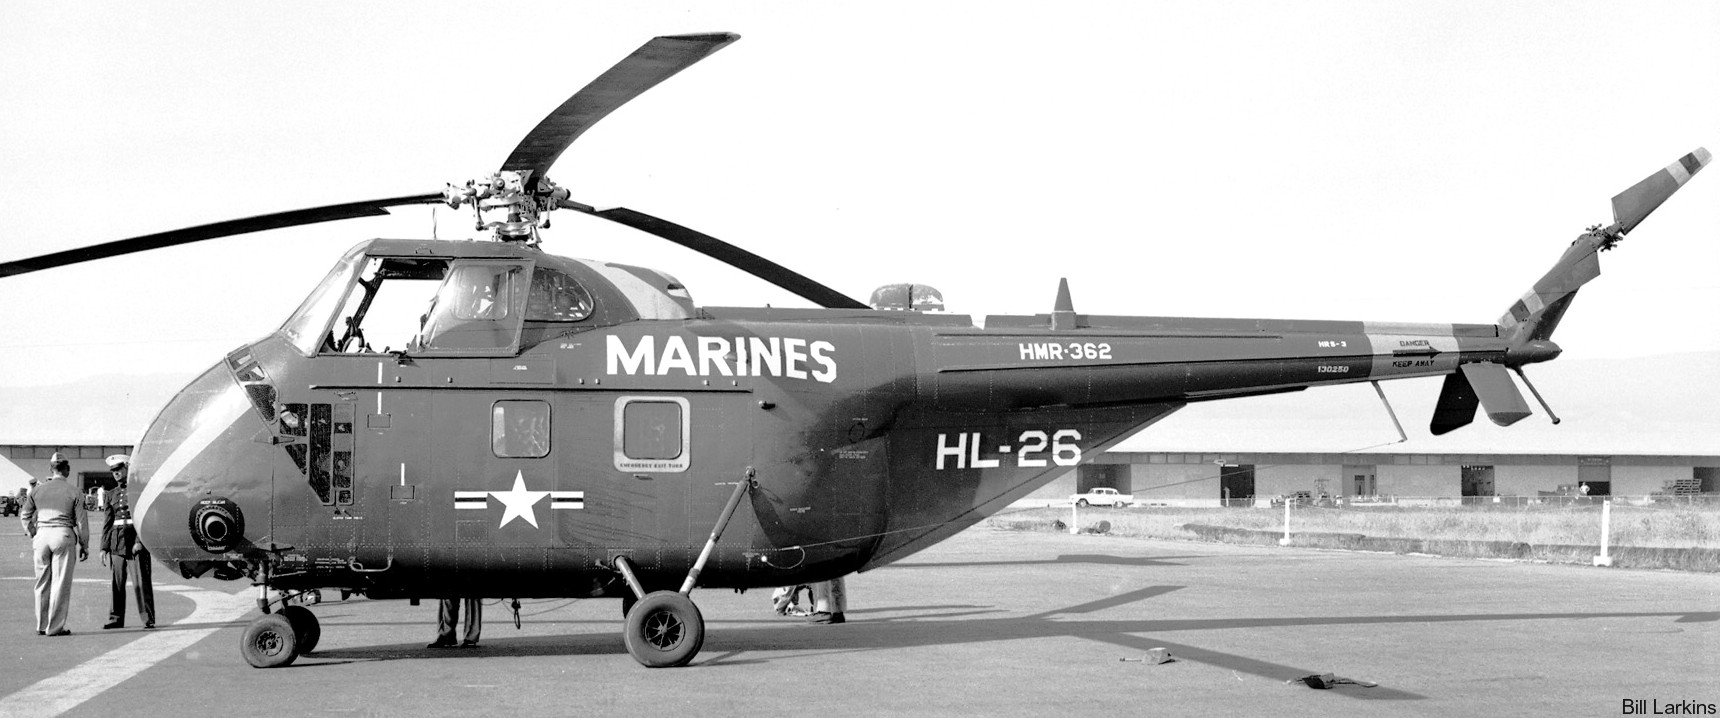 hmr-362 ugly angels marine helicopter transport squadron usmc sikorsky hrs-3 02